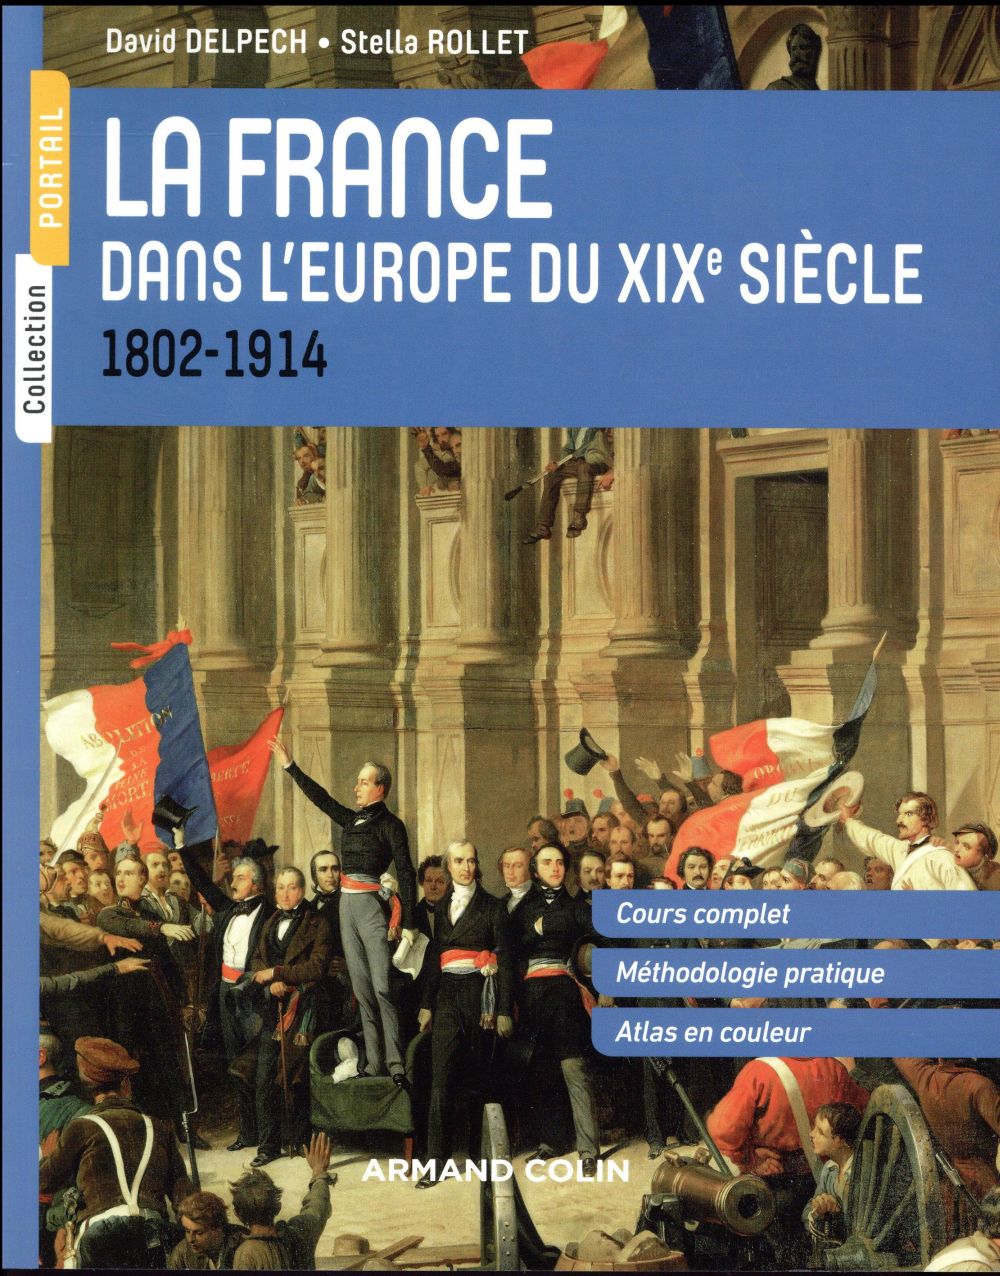 LA FRANCE DANS L'EUROPE DU XIXE SIECLE - 1804-1914 - 1802-1914